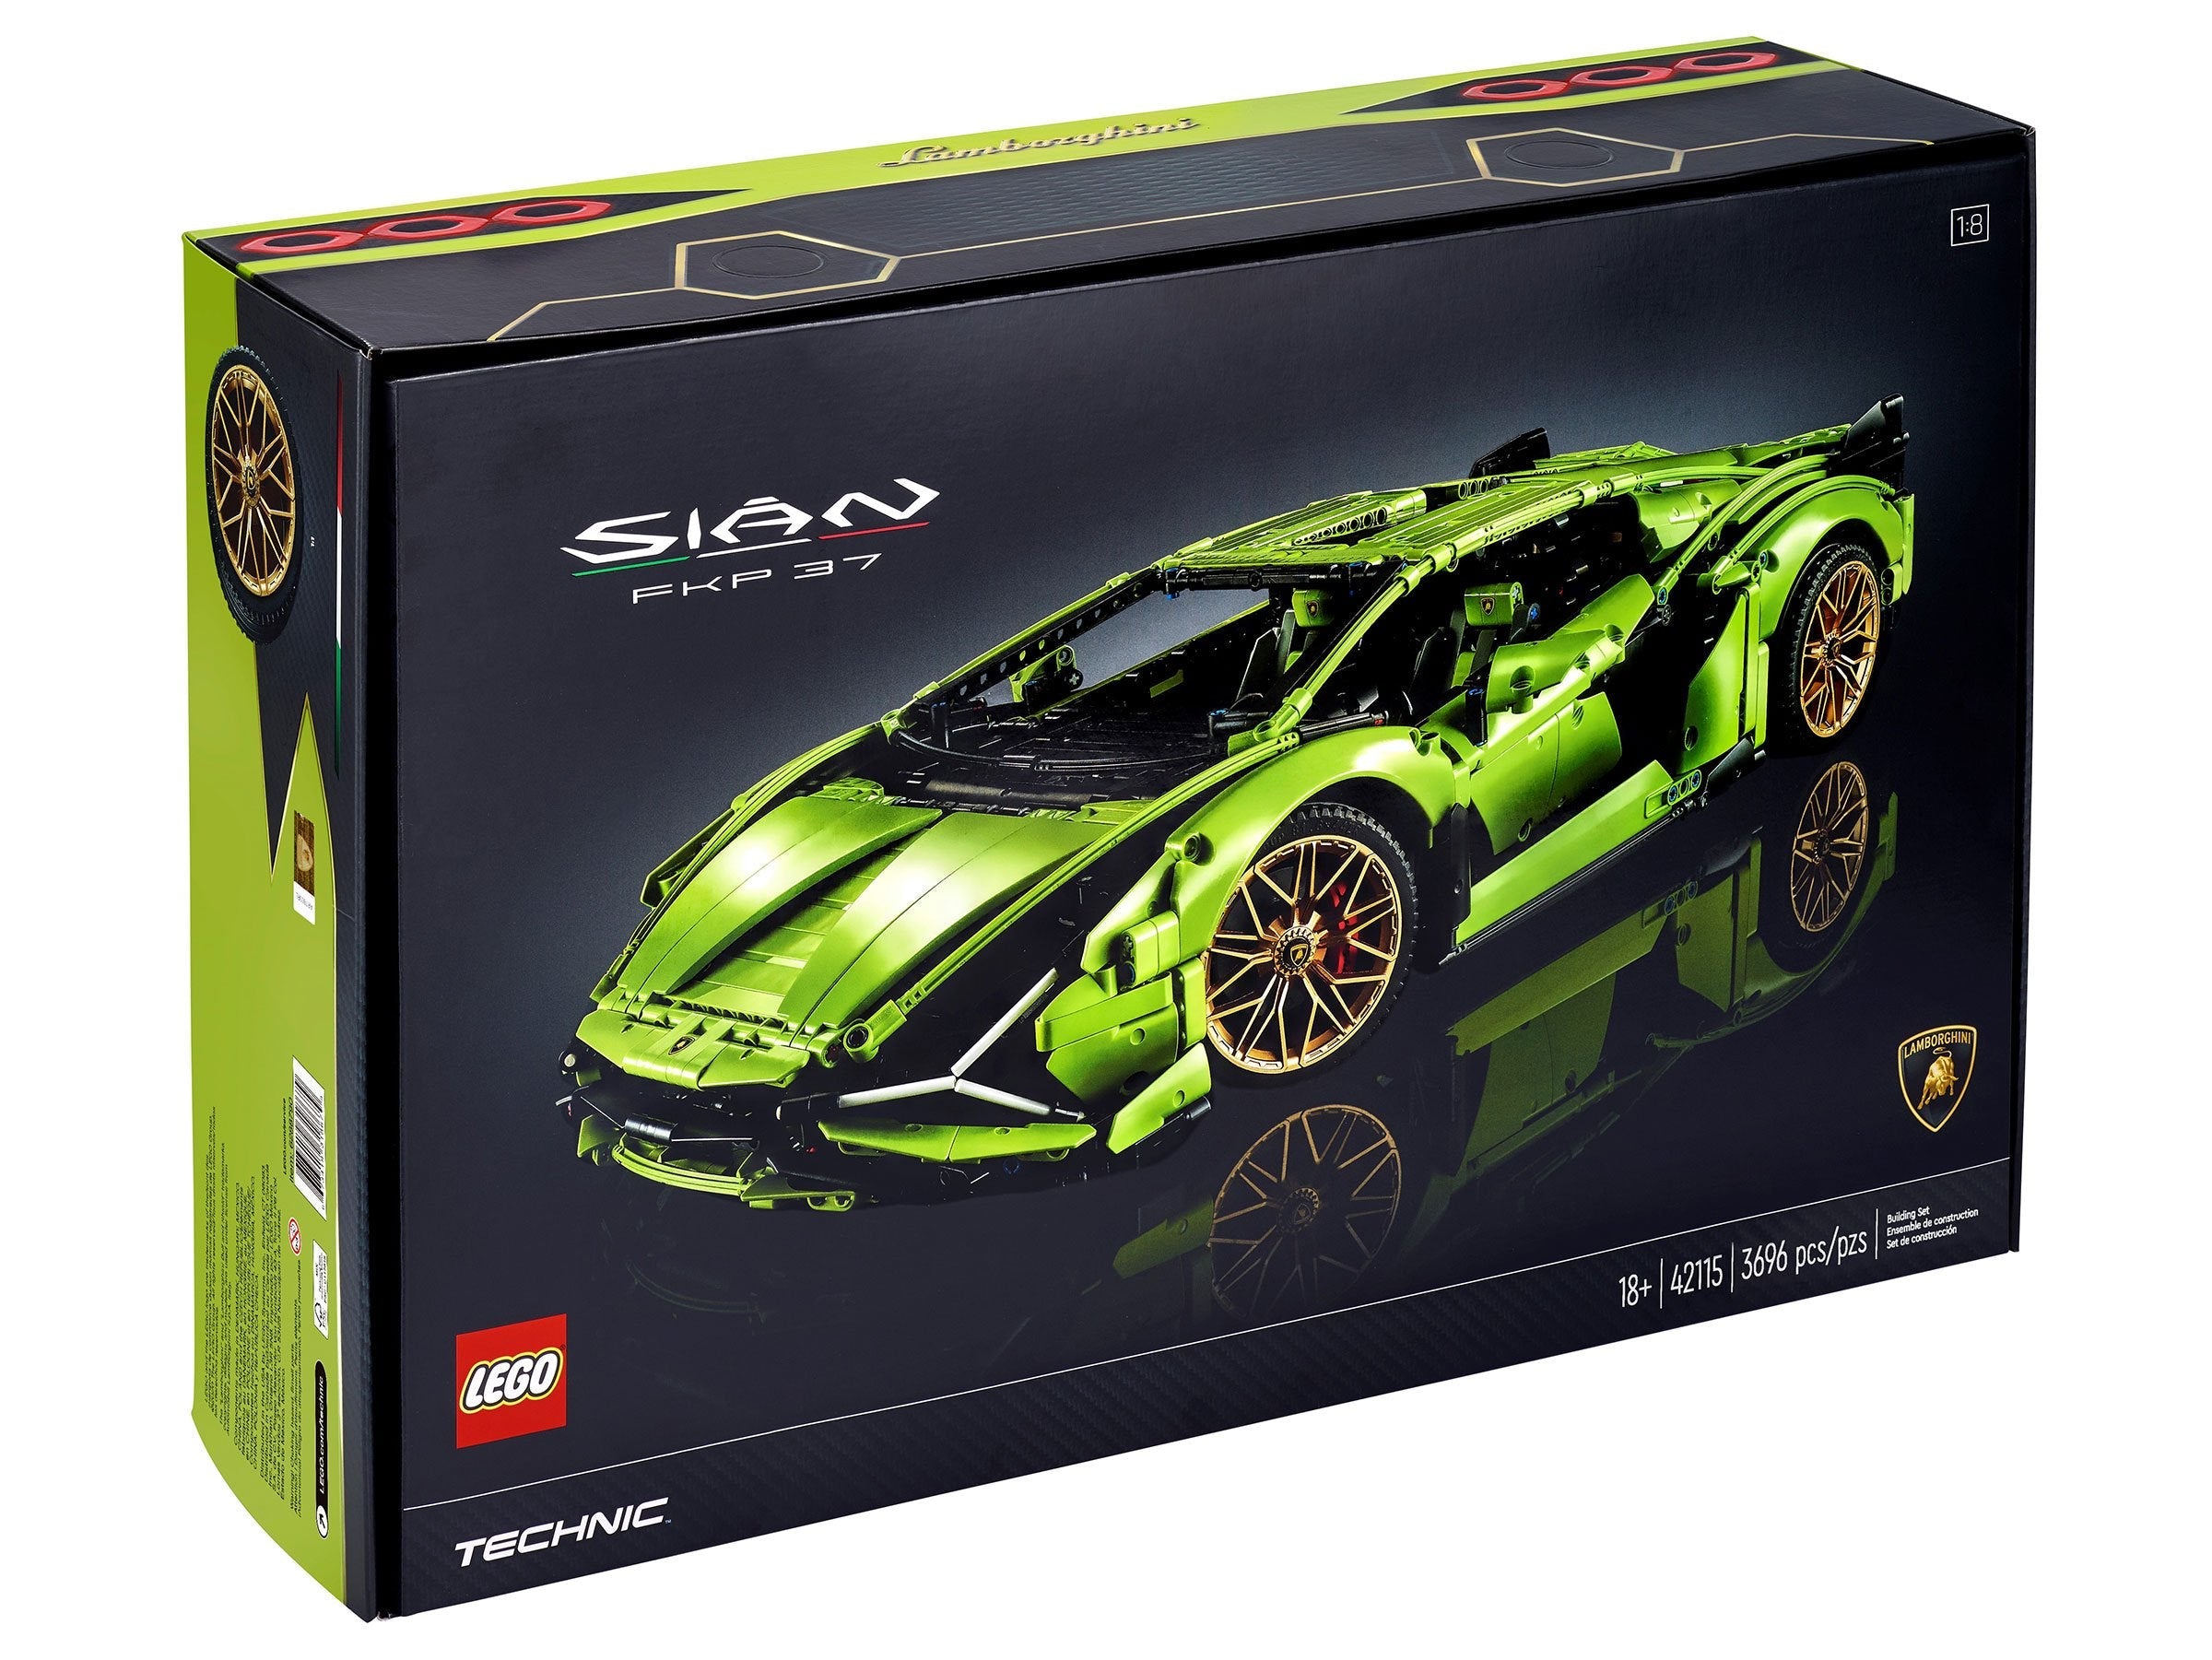 LEGO Technic Lamborghini Sián FKP 37 (42115) - im GOLDSTIEN.SHOP verfügbar mit Gratisversand ab Schweizer Lager! (5702016617535)